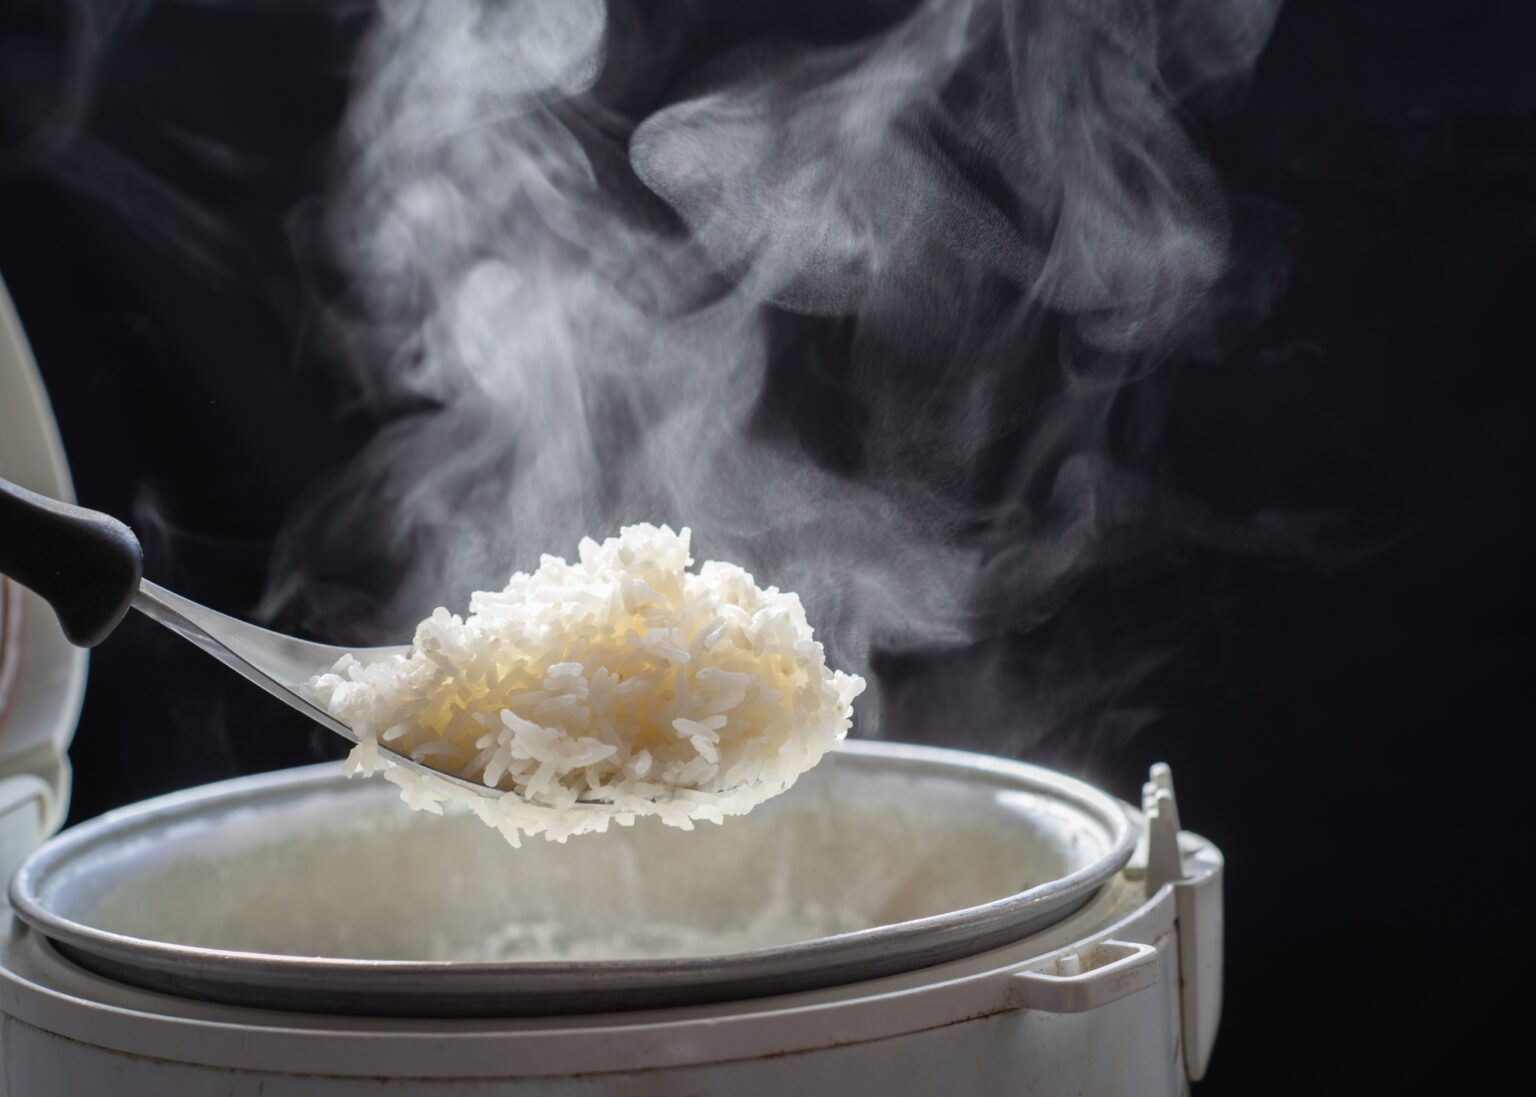 Spoiler: Harvard não condenou o arroz